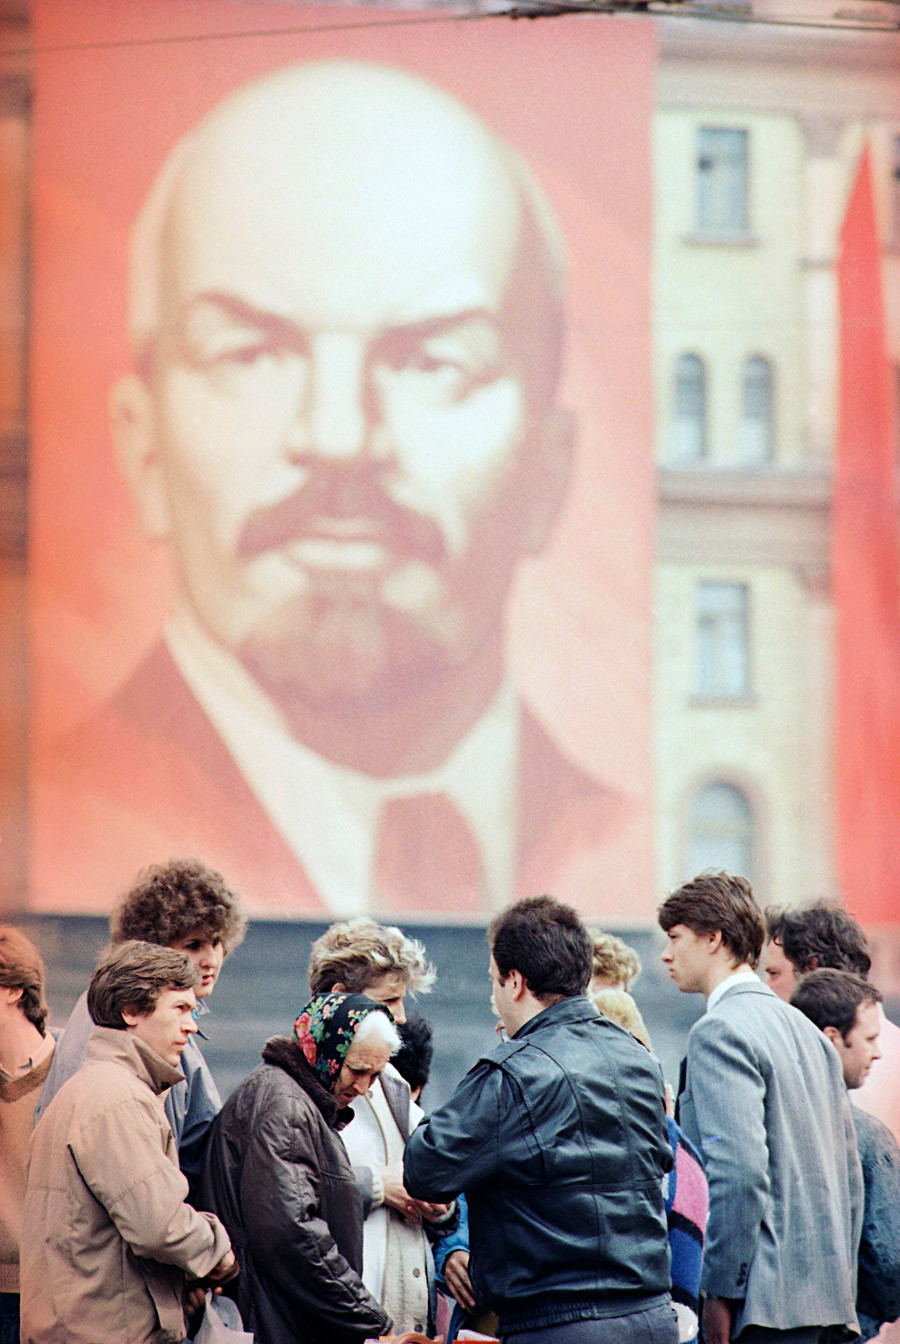 Sovjetski črni trg z ameriškimi žvečilkami, Moskva, 30. april 1991